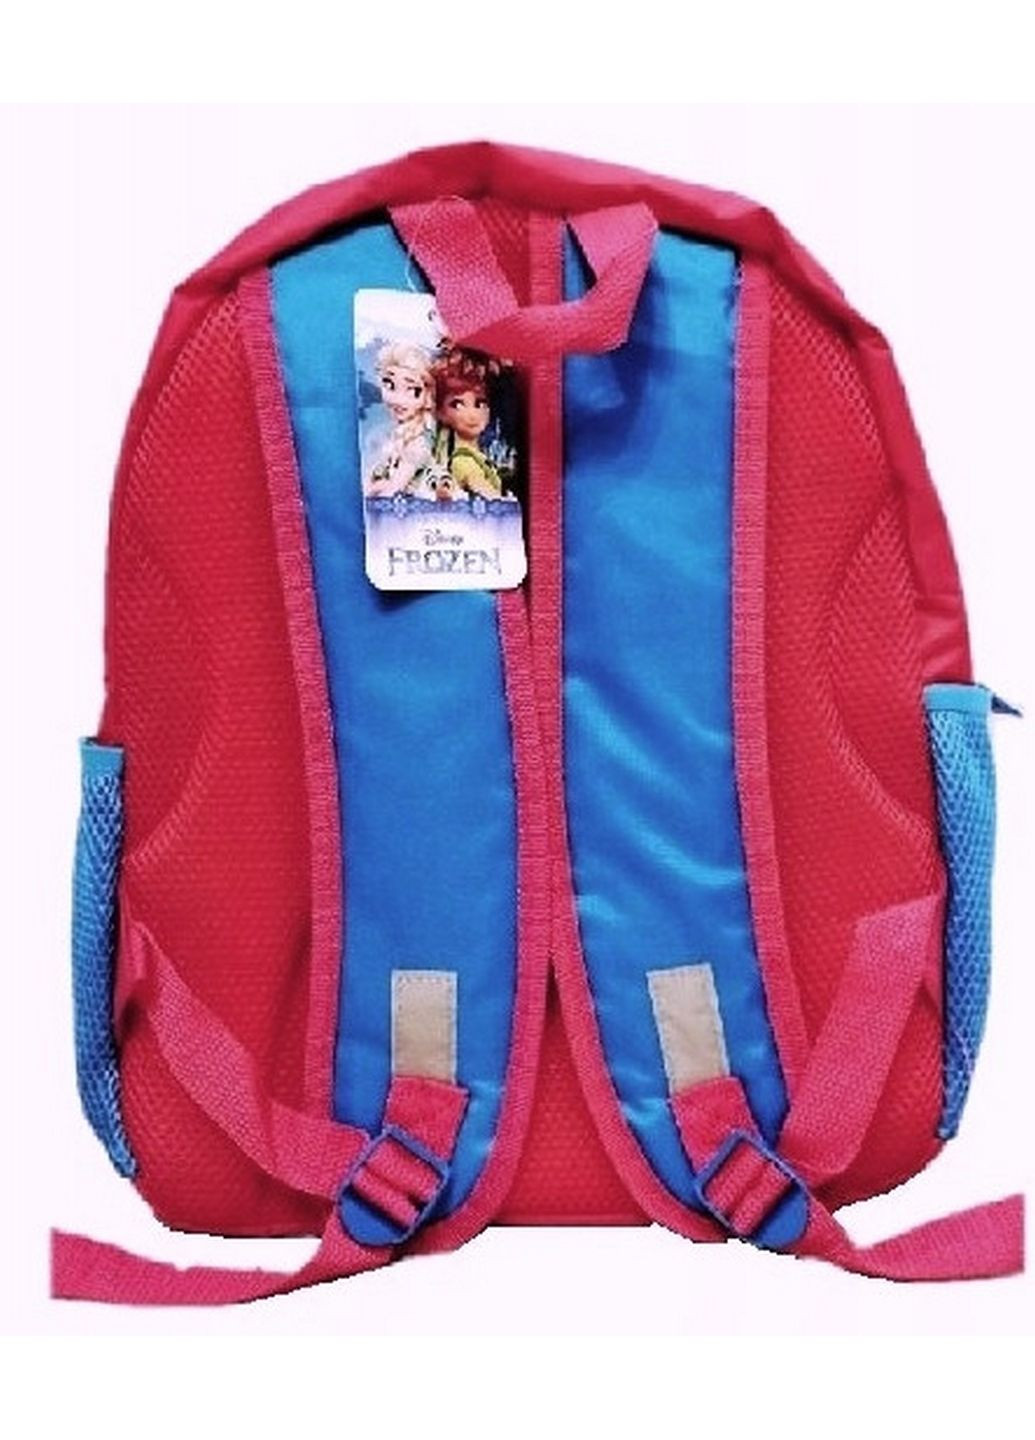 Рюкзак школьный для девочки Frozen Anna & Elsa Paso (279316252)